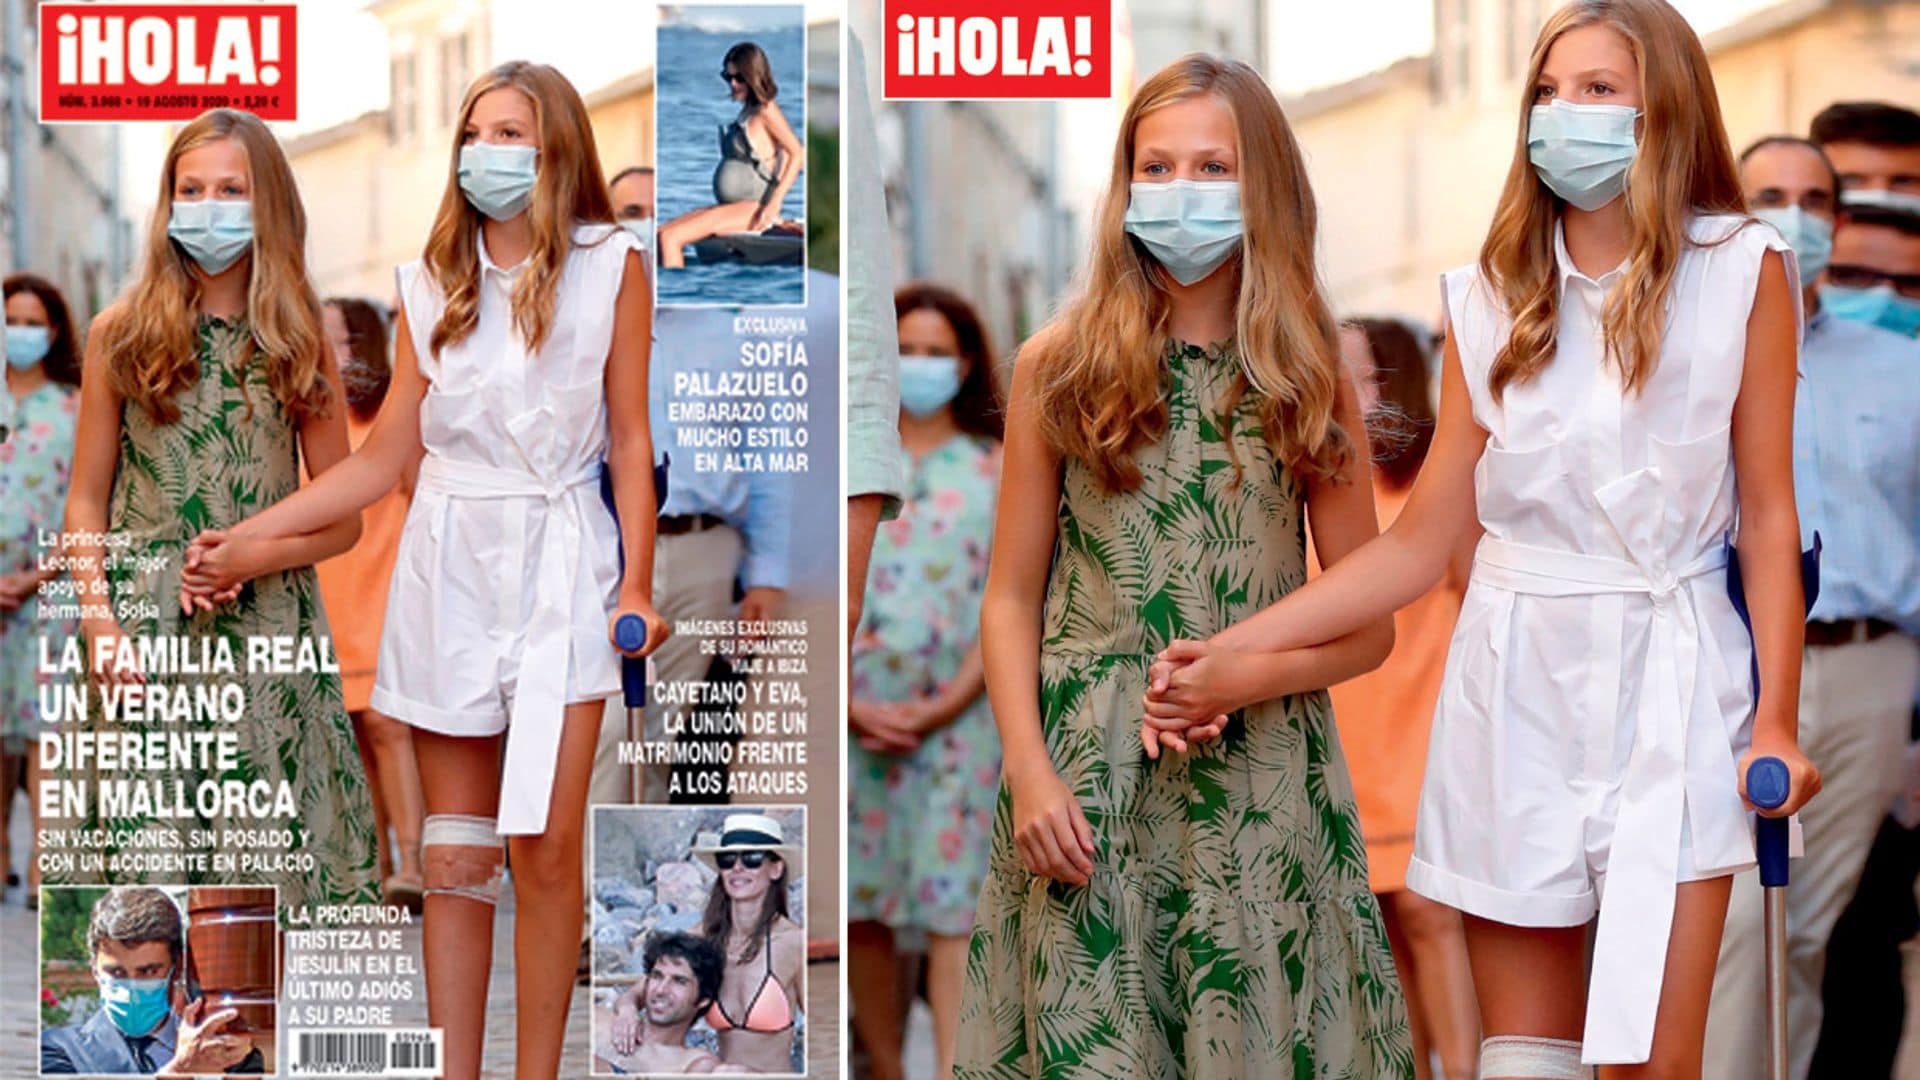 En ¡HOLA!: la Familia Real, un verano diferente en Mallorca